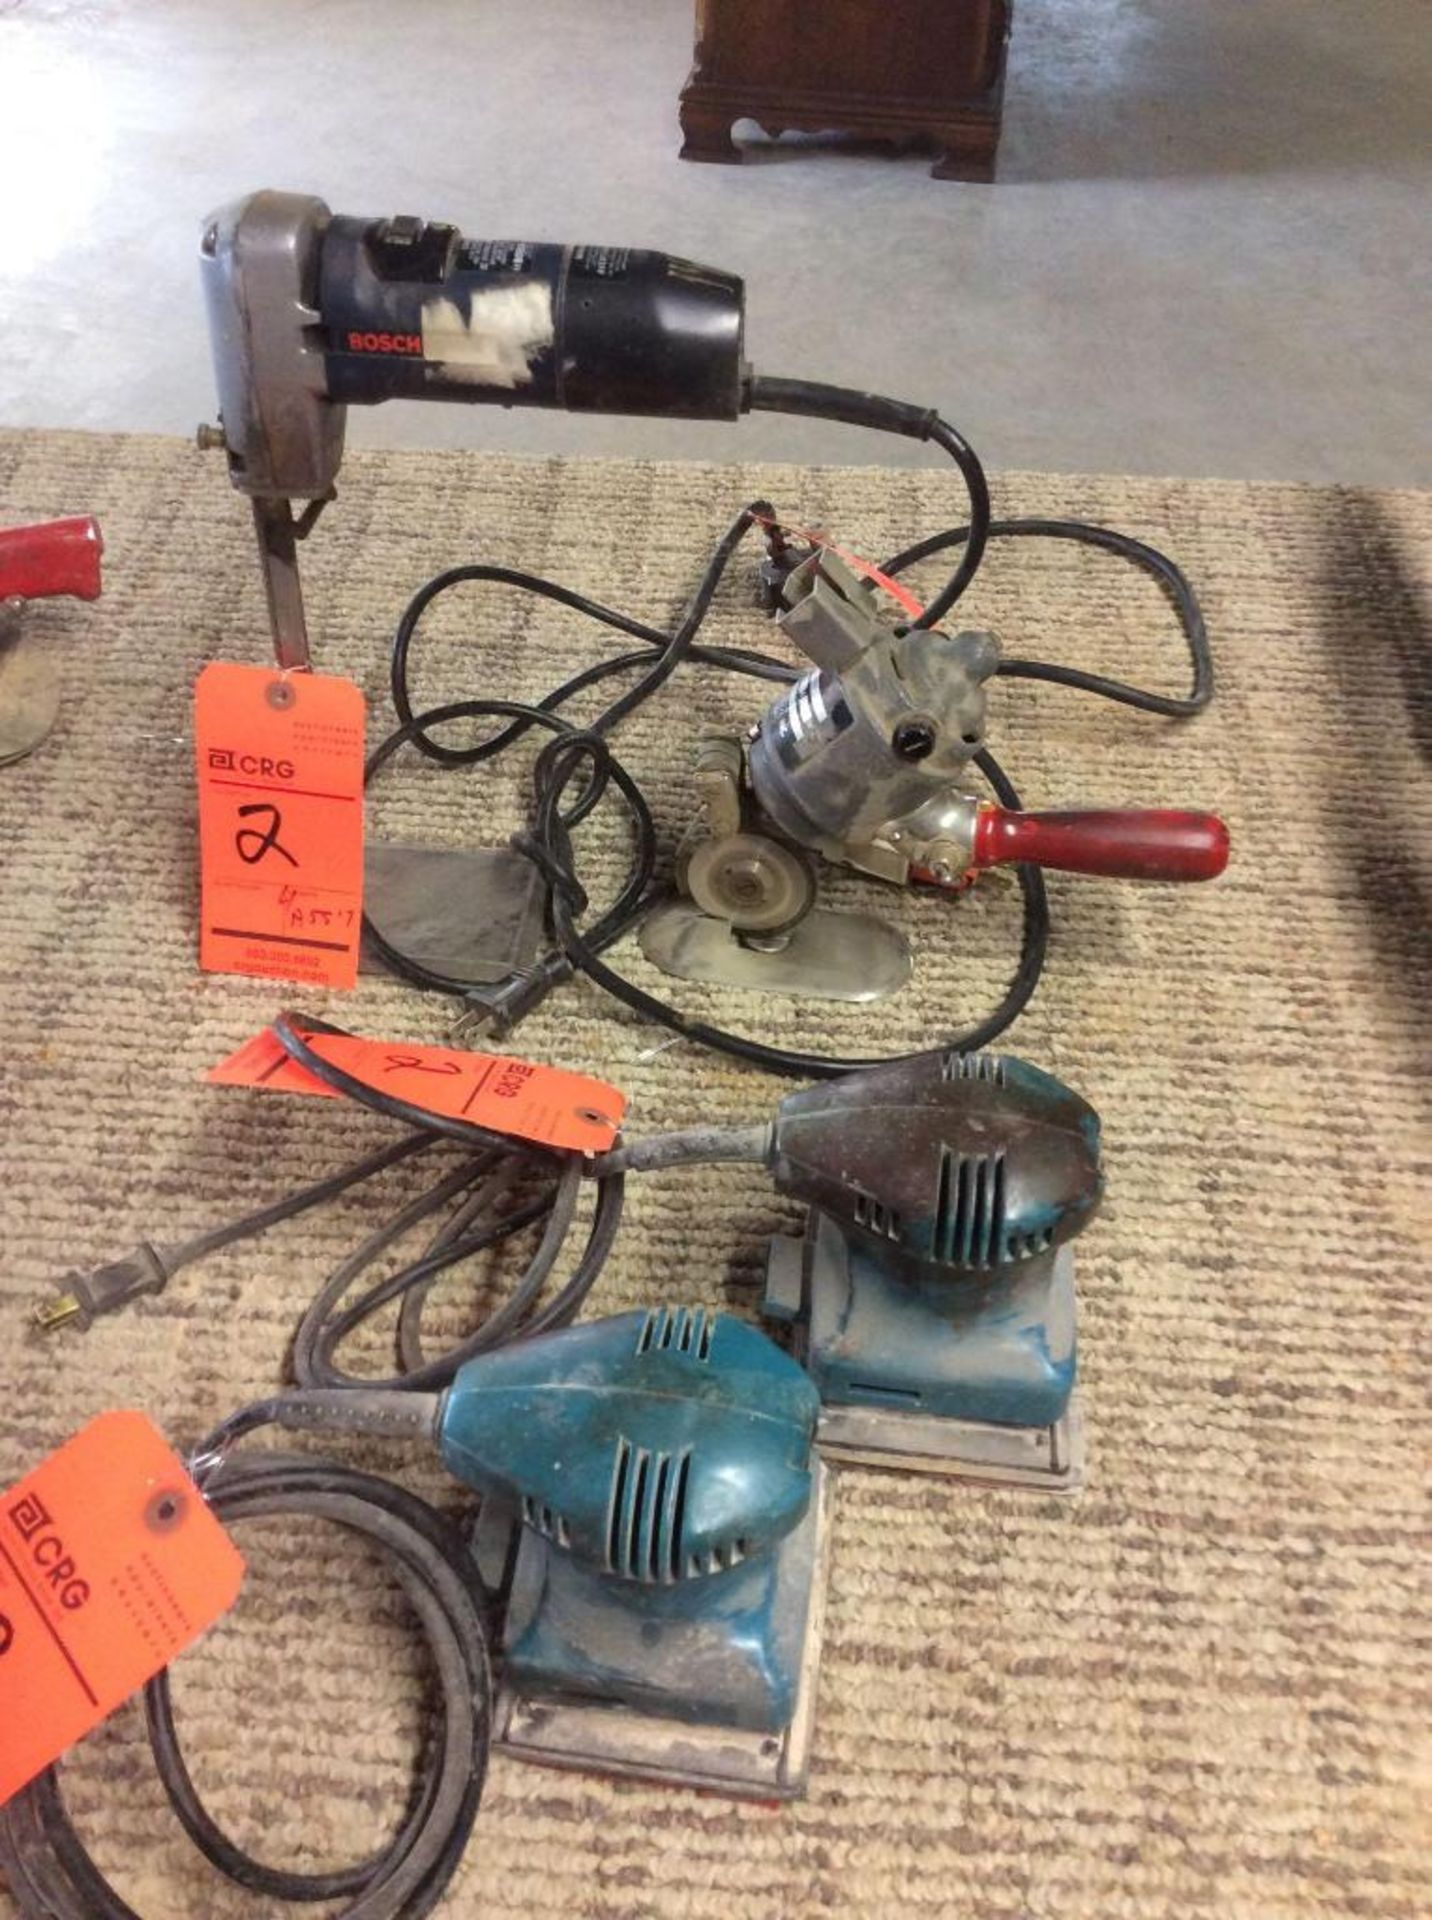 Lot of (4) electric hand tools, (2) Makita, BO4552 palm sanders, (1) Maimin rotoshear, and (1) Bosch